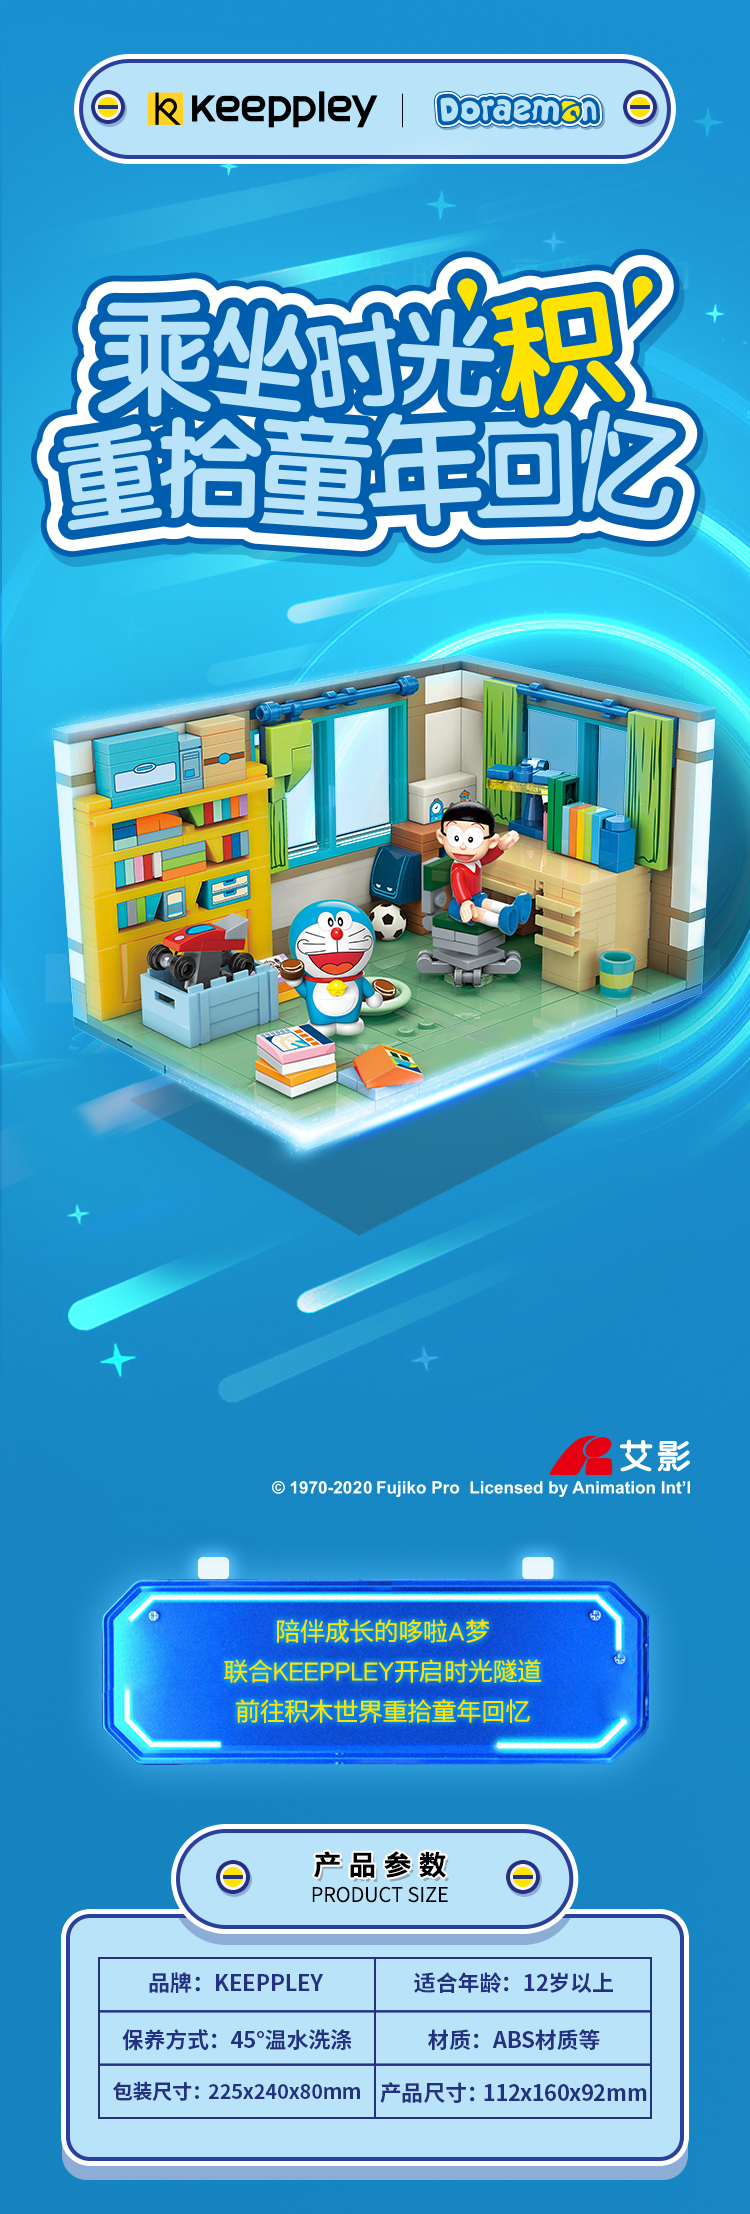 Keeppley K20402 Doraemon Nobita Nobis Zimmer QMAN Bausteine Spielzeugset